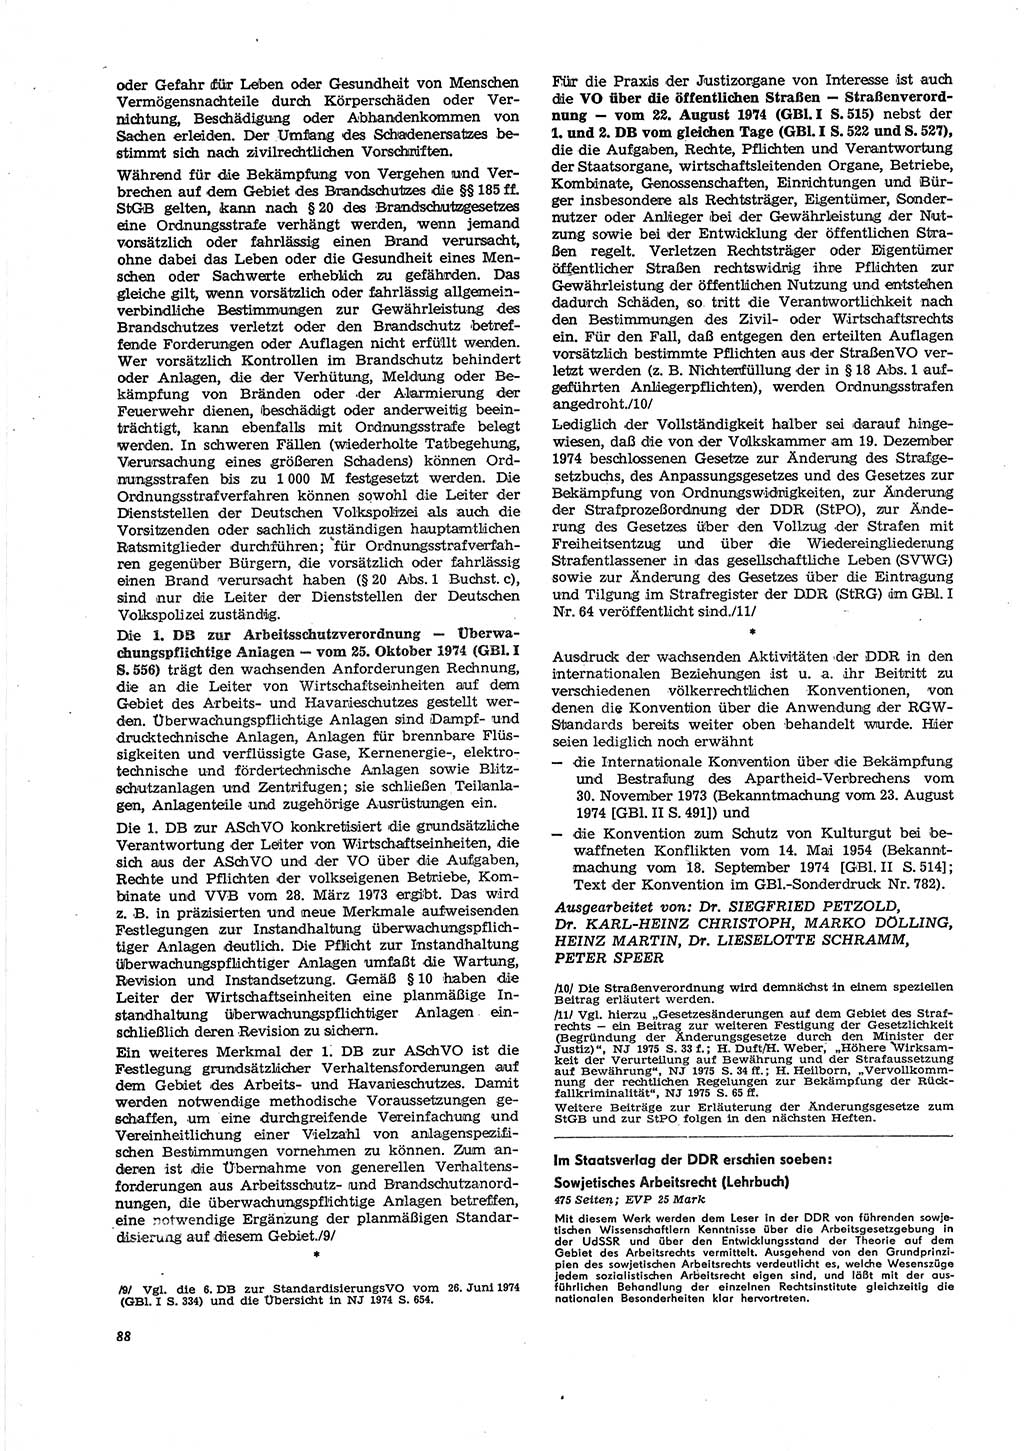 Neue Justiz (NJ), Zeitschrift für Recht und Rechtswissenschaft [Deutsche Demokratische Republik (DDR)], 29. Jahrgang 1975, Seite 88 (NJ DDR 1975, S. 88)